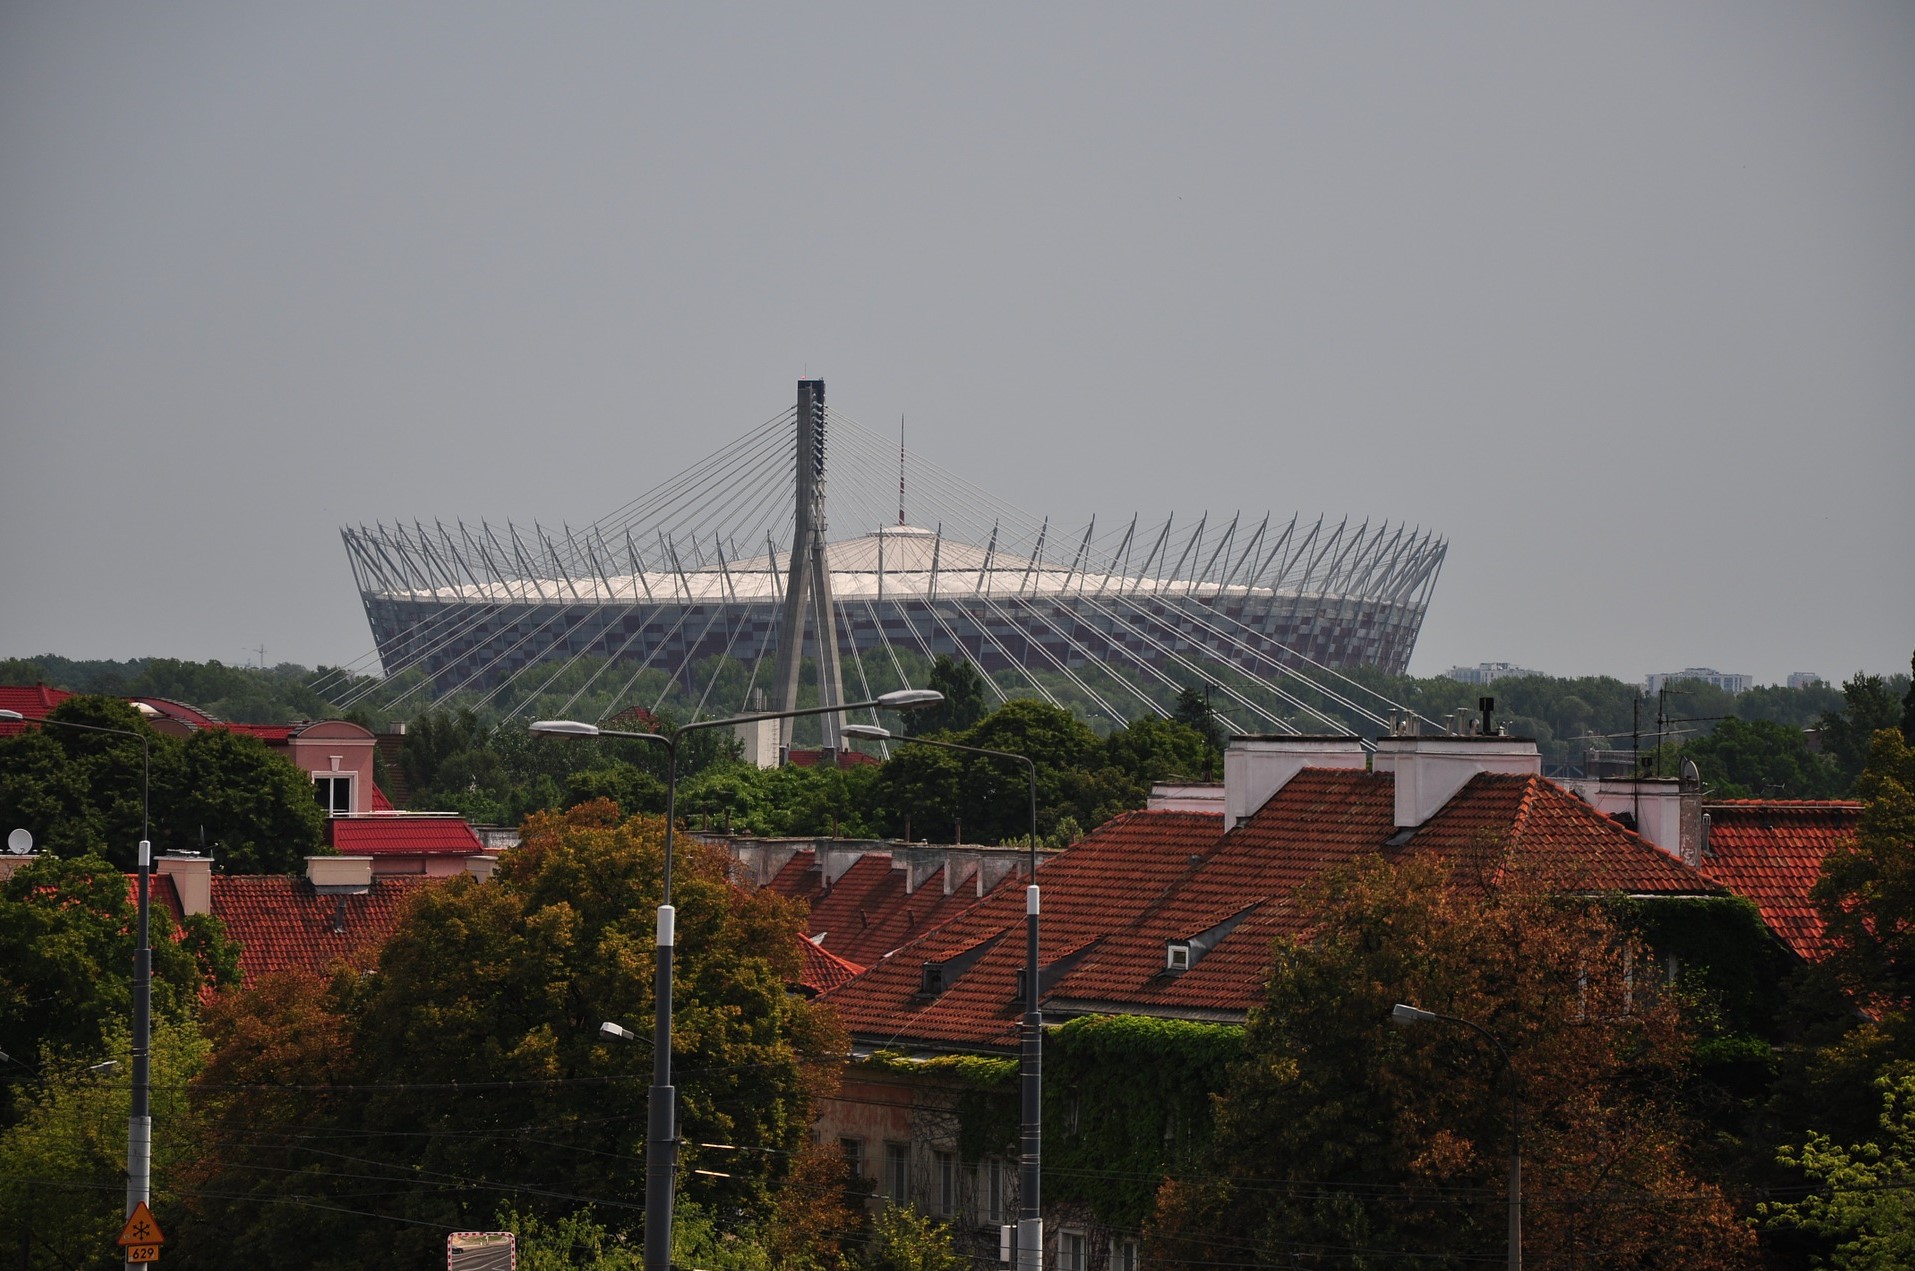 Het indrukwekkende nationale stadion in Warschau die door de verhoging goed te zien is vanuit de voetbalstad.